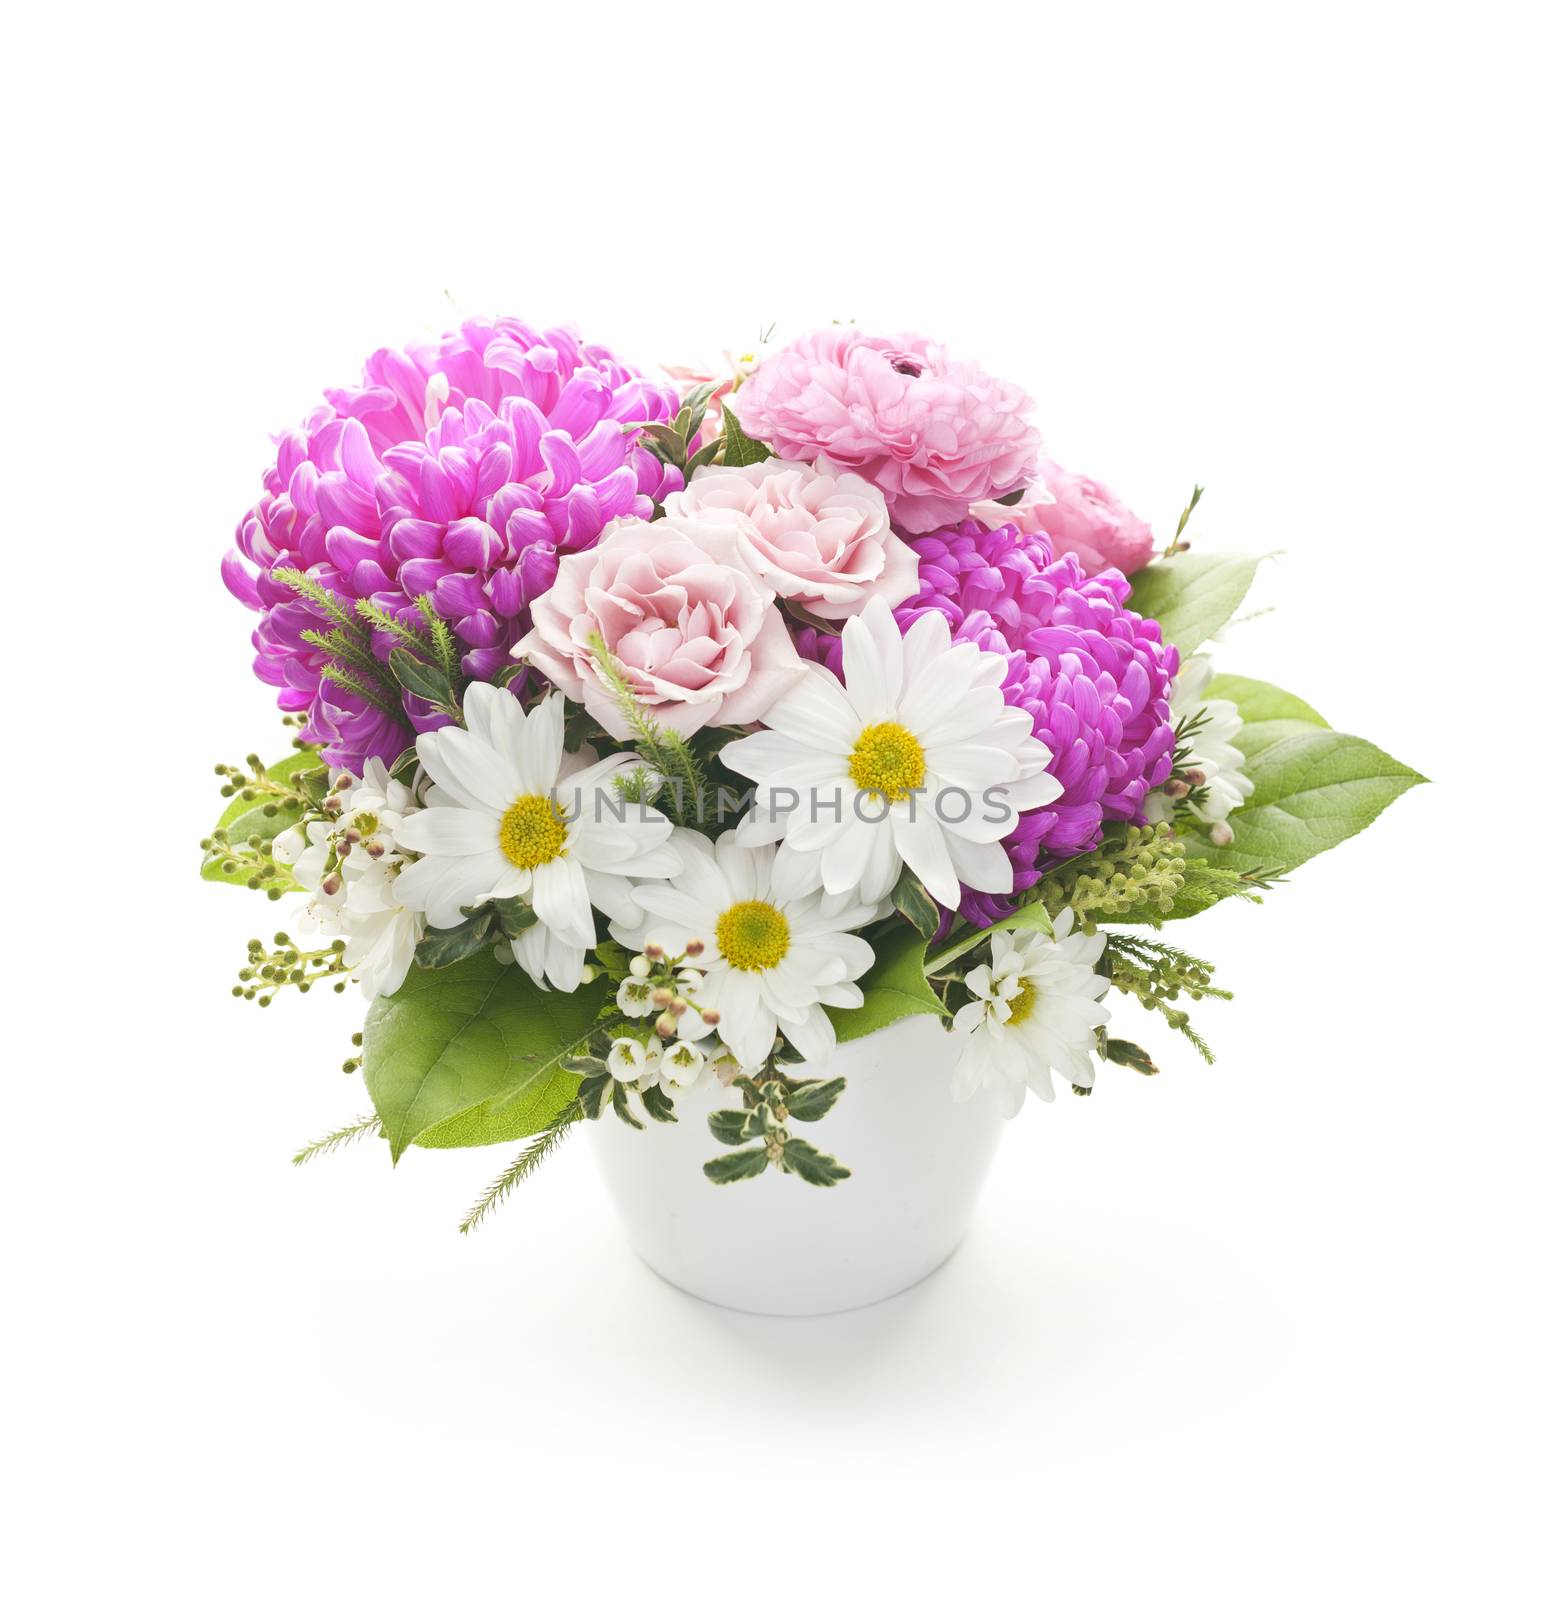 Flower arrangement by elenathewise